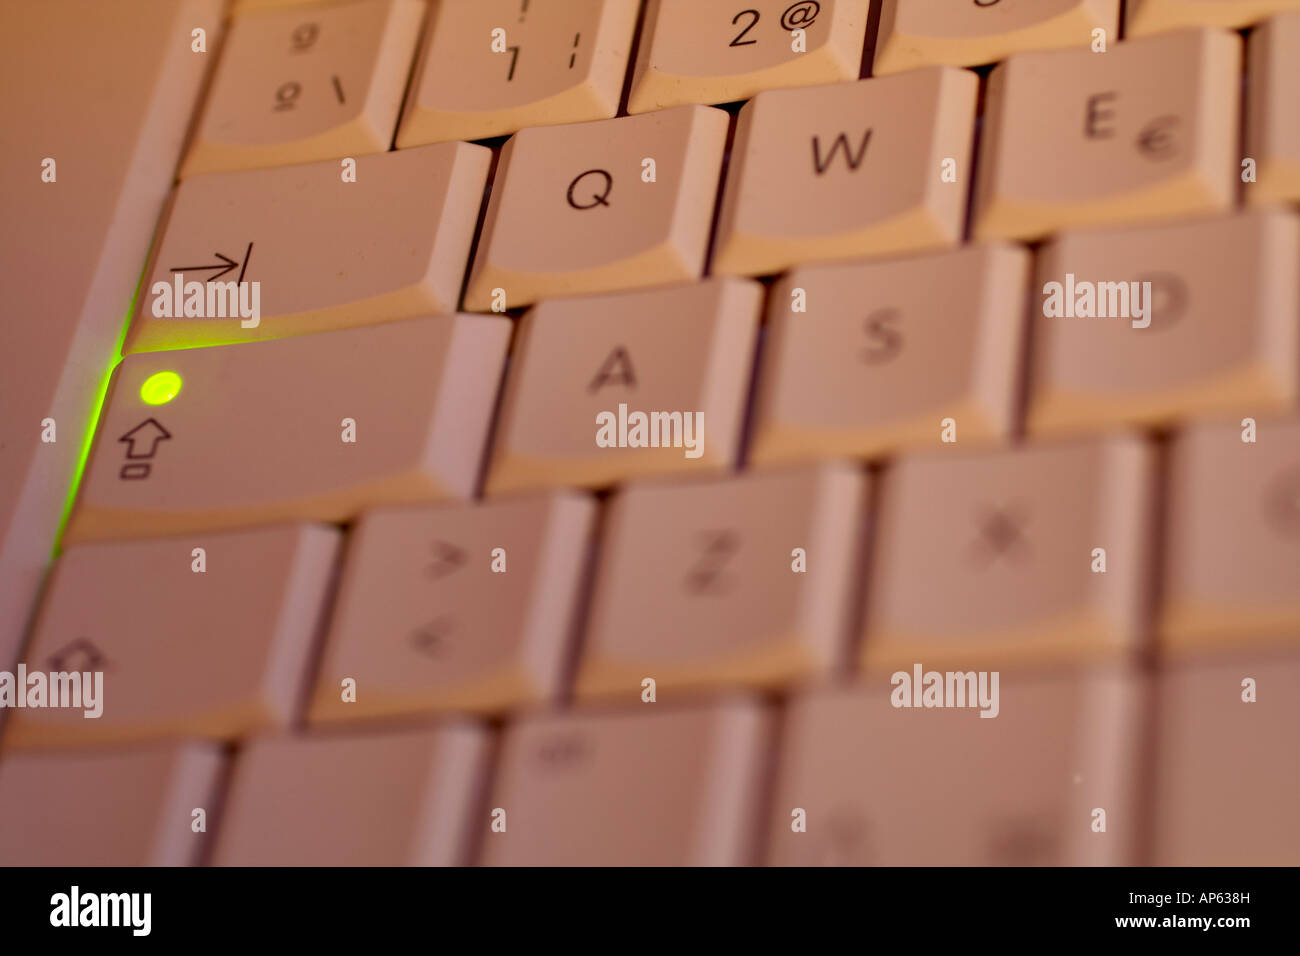 Imagen macro de teclado en el botón shift lock Fotografía de stock - Alamy